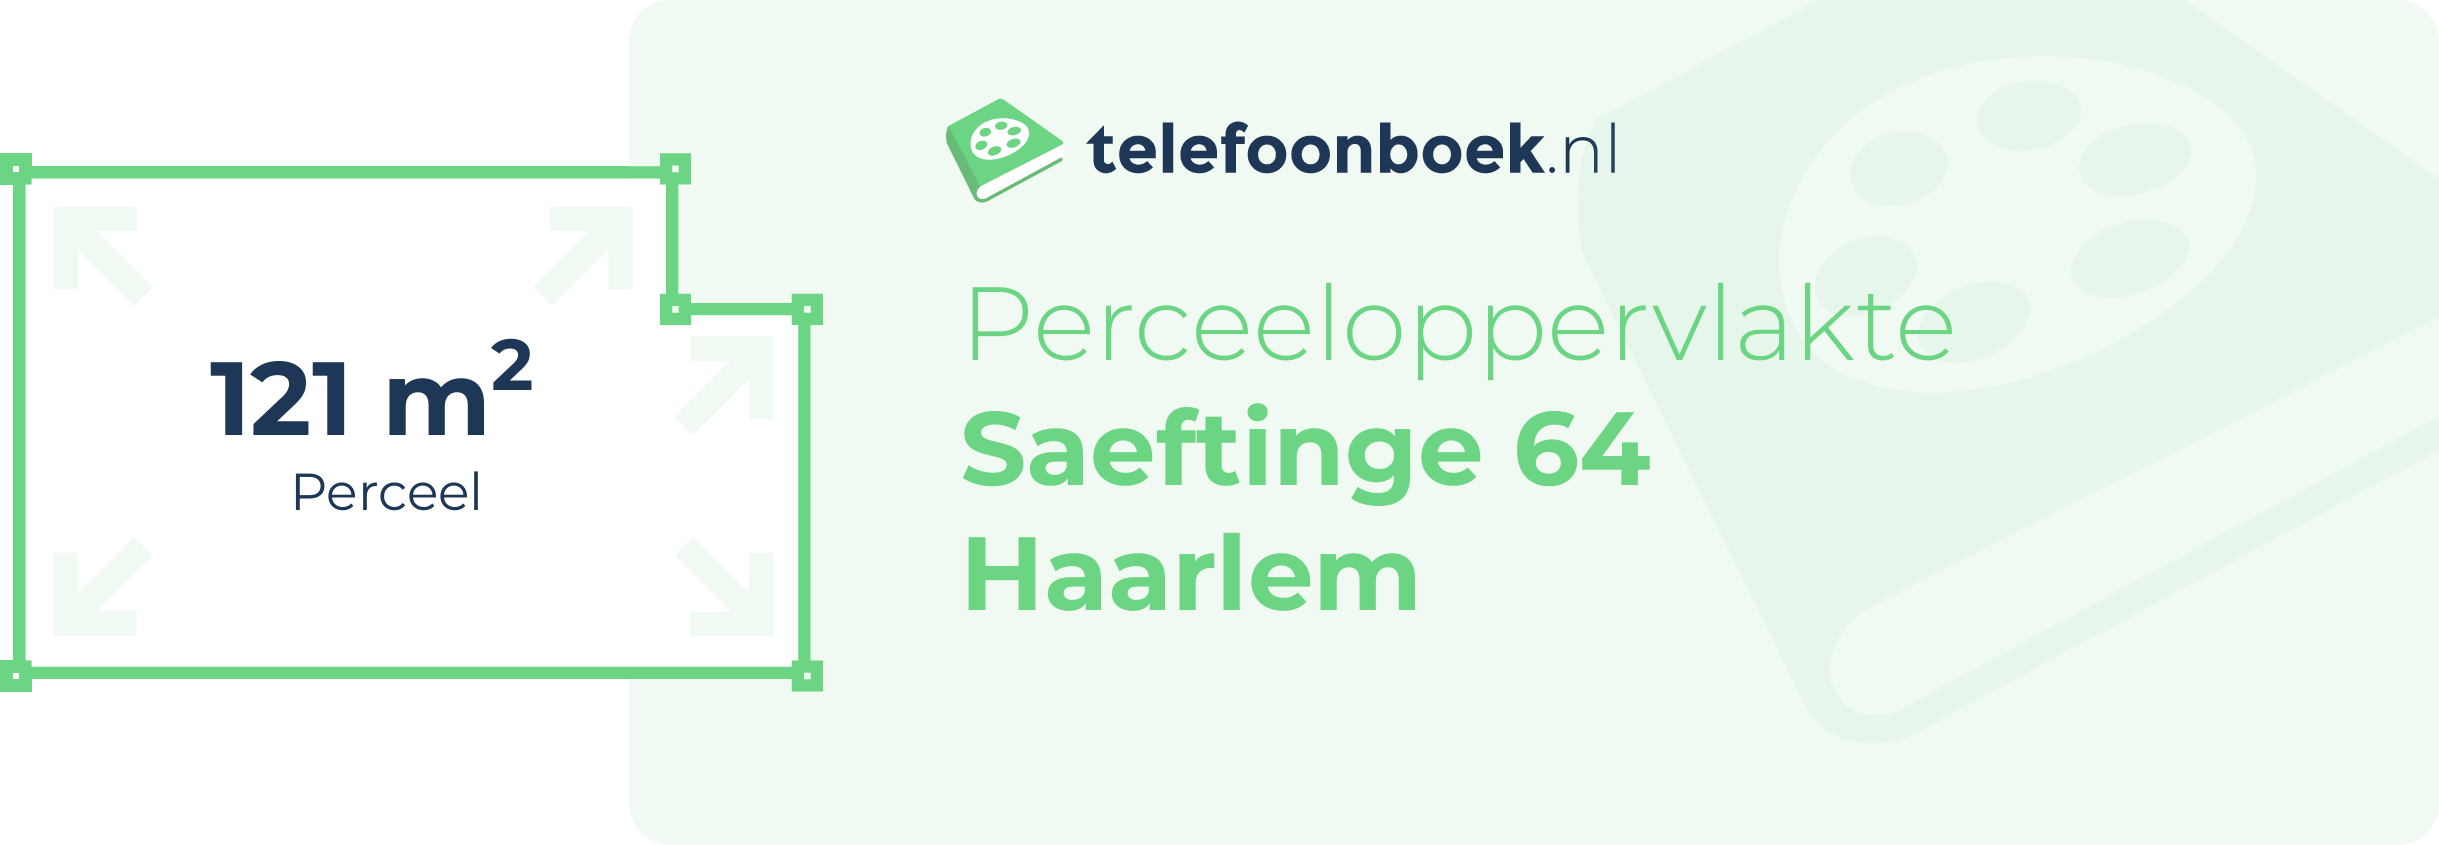 Perceeloppervlakte Saeftinge 64 Haarlem